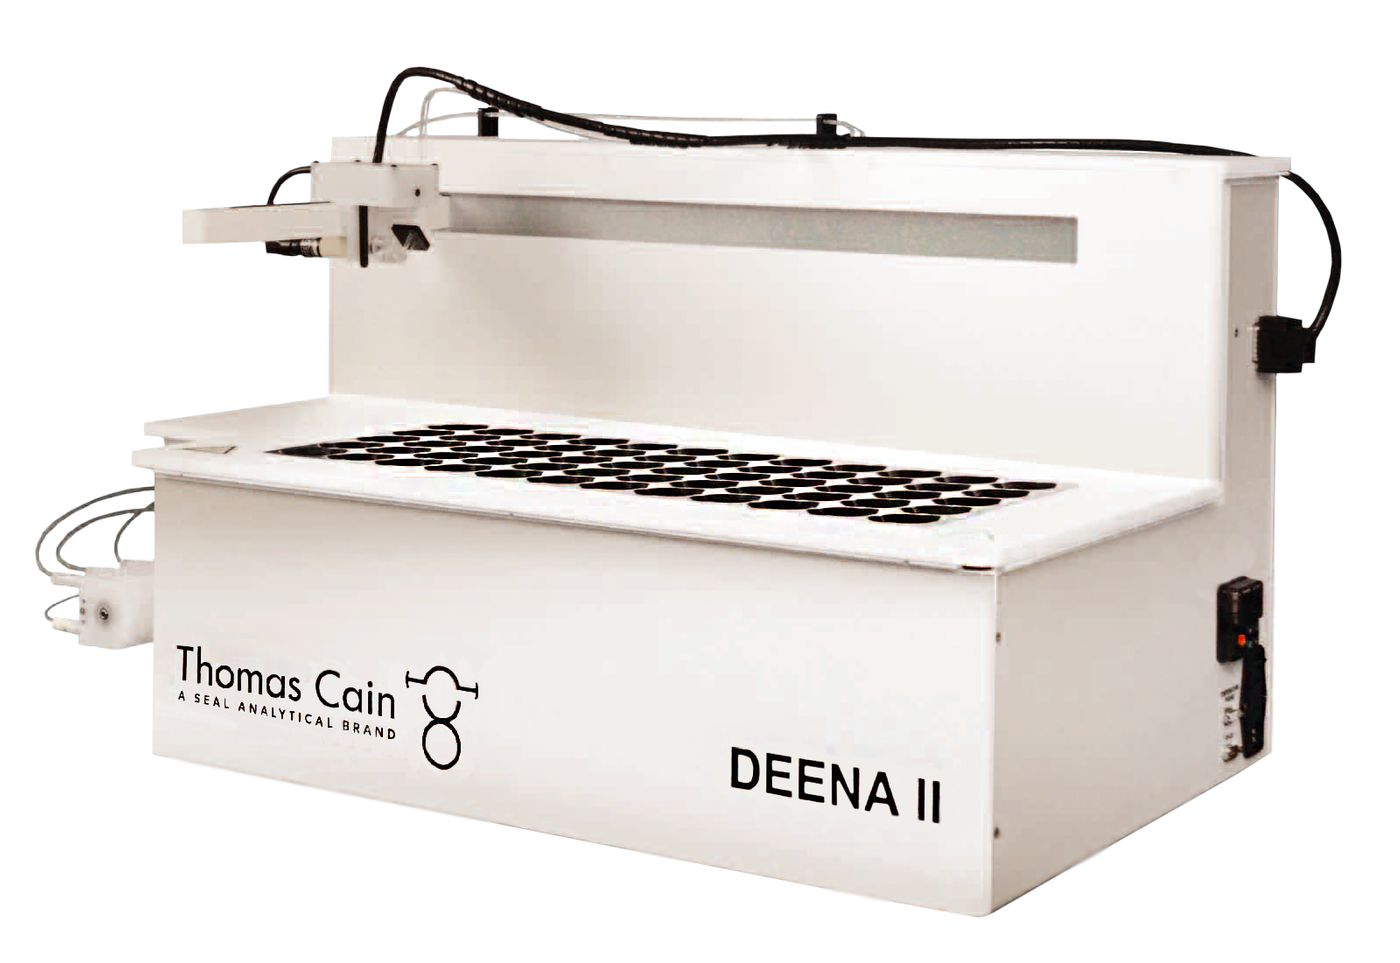 Automatice la preparación de muestras y digestión de metales con el DEENA II